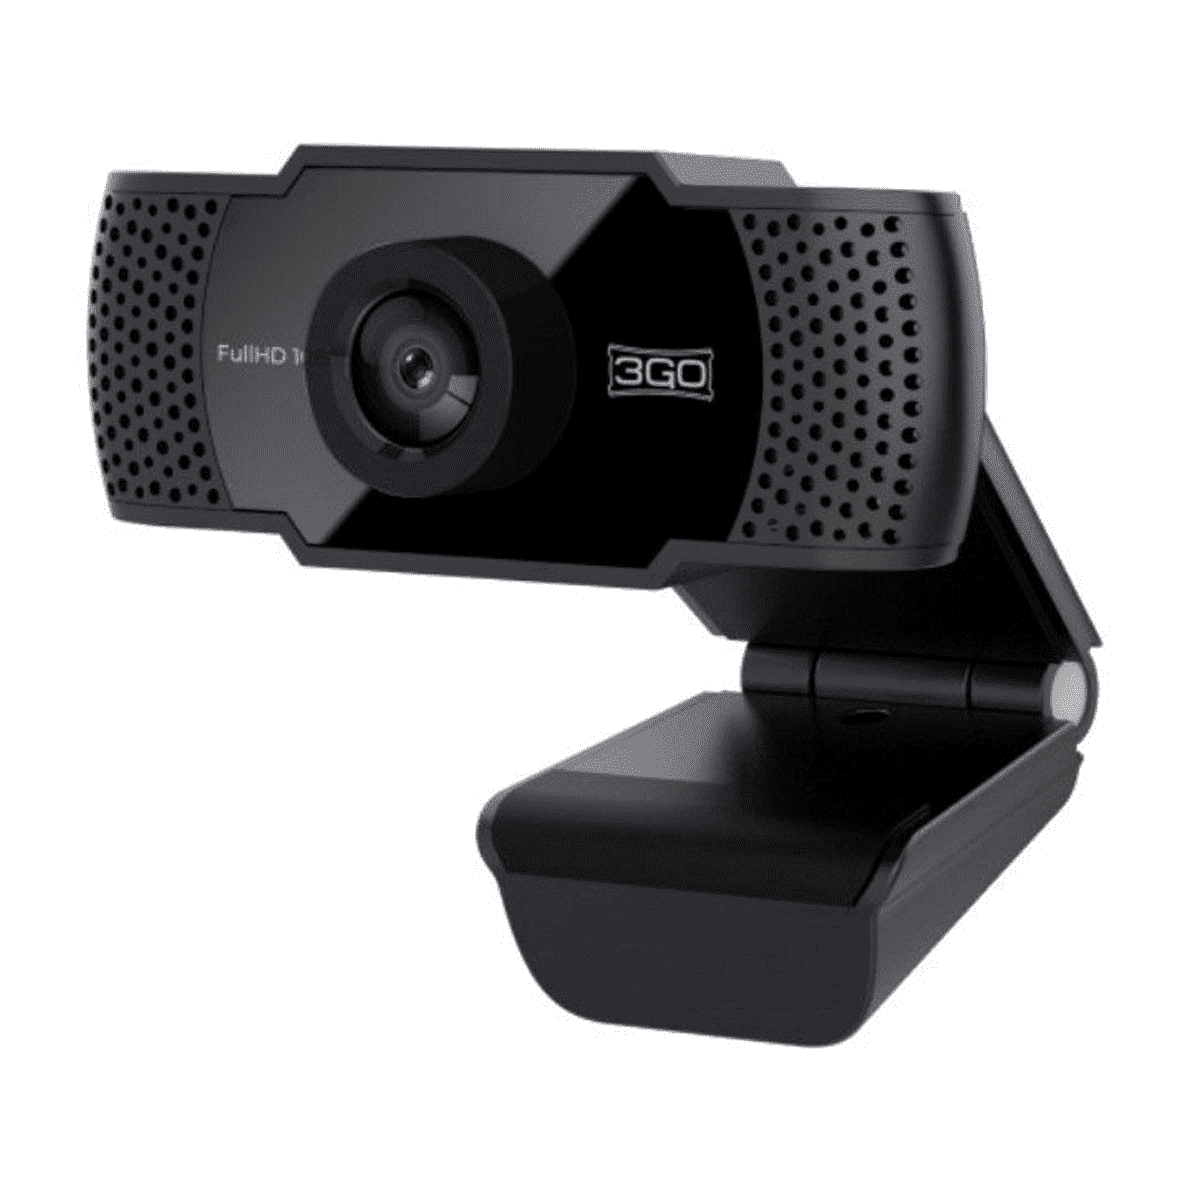 3Go View Webcam HD 720p USB 2.0 - Microfono Integrado - Reduccion de Ruido y Eco - Color Negro